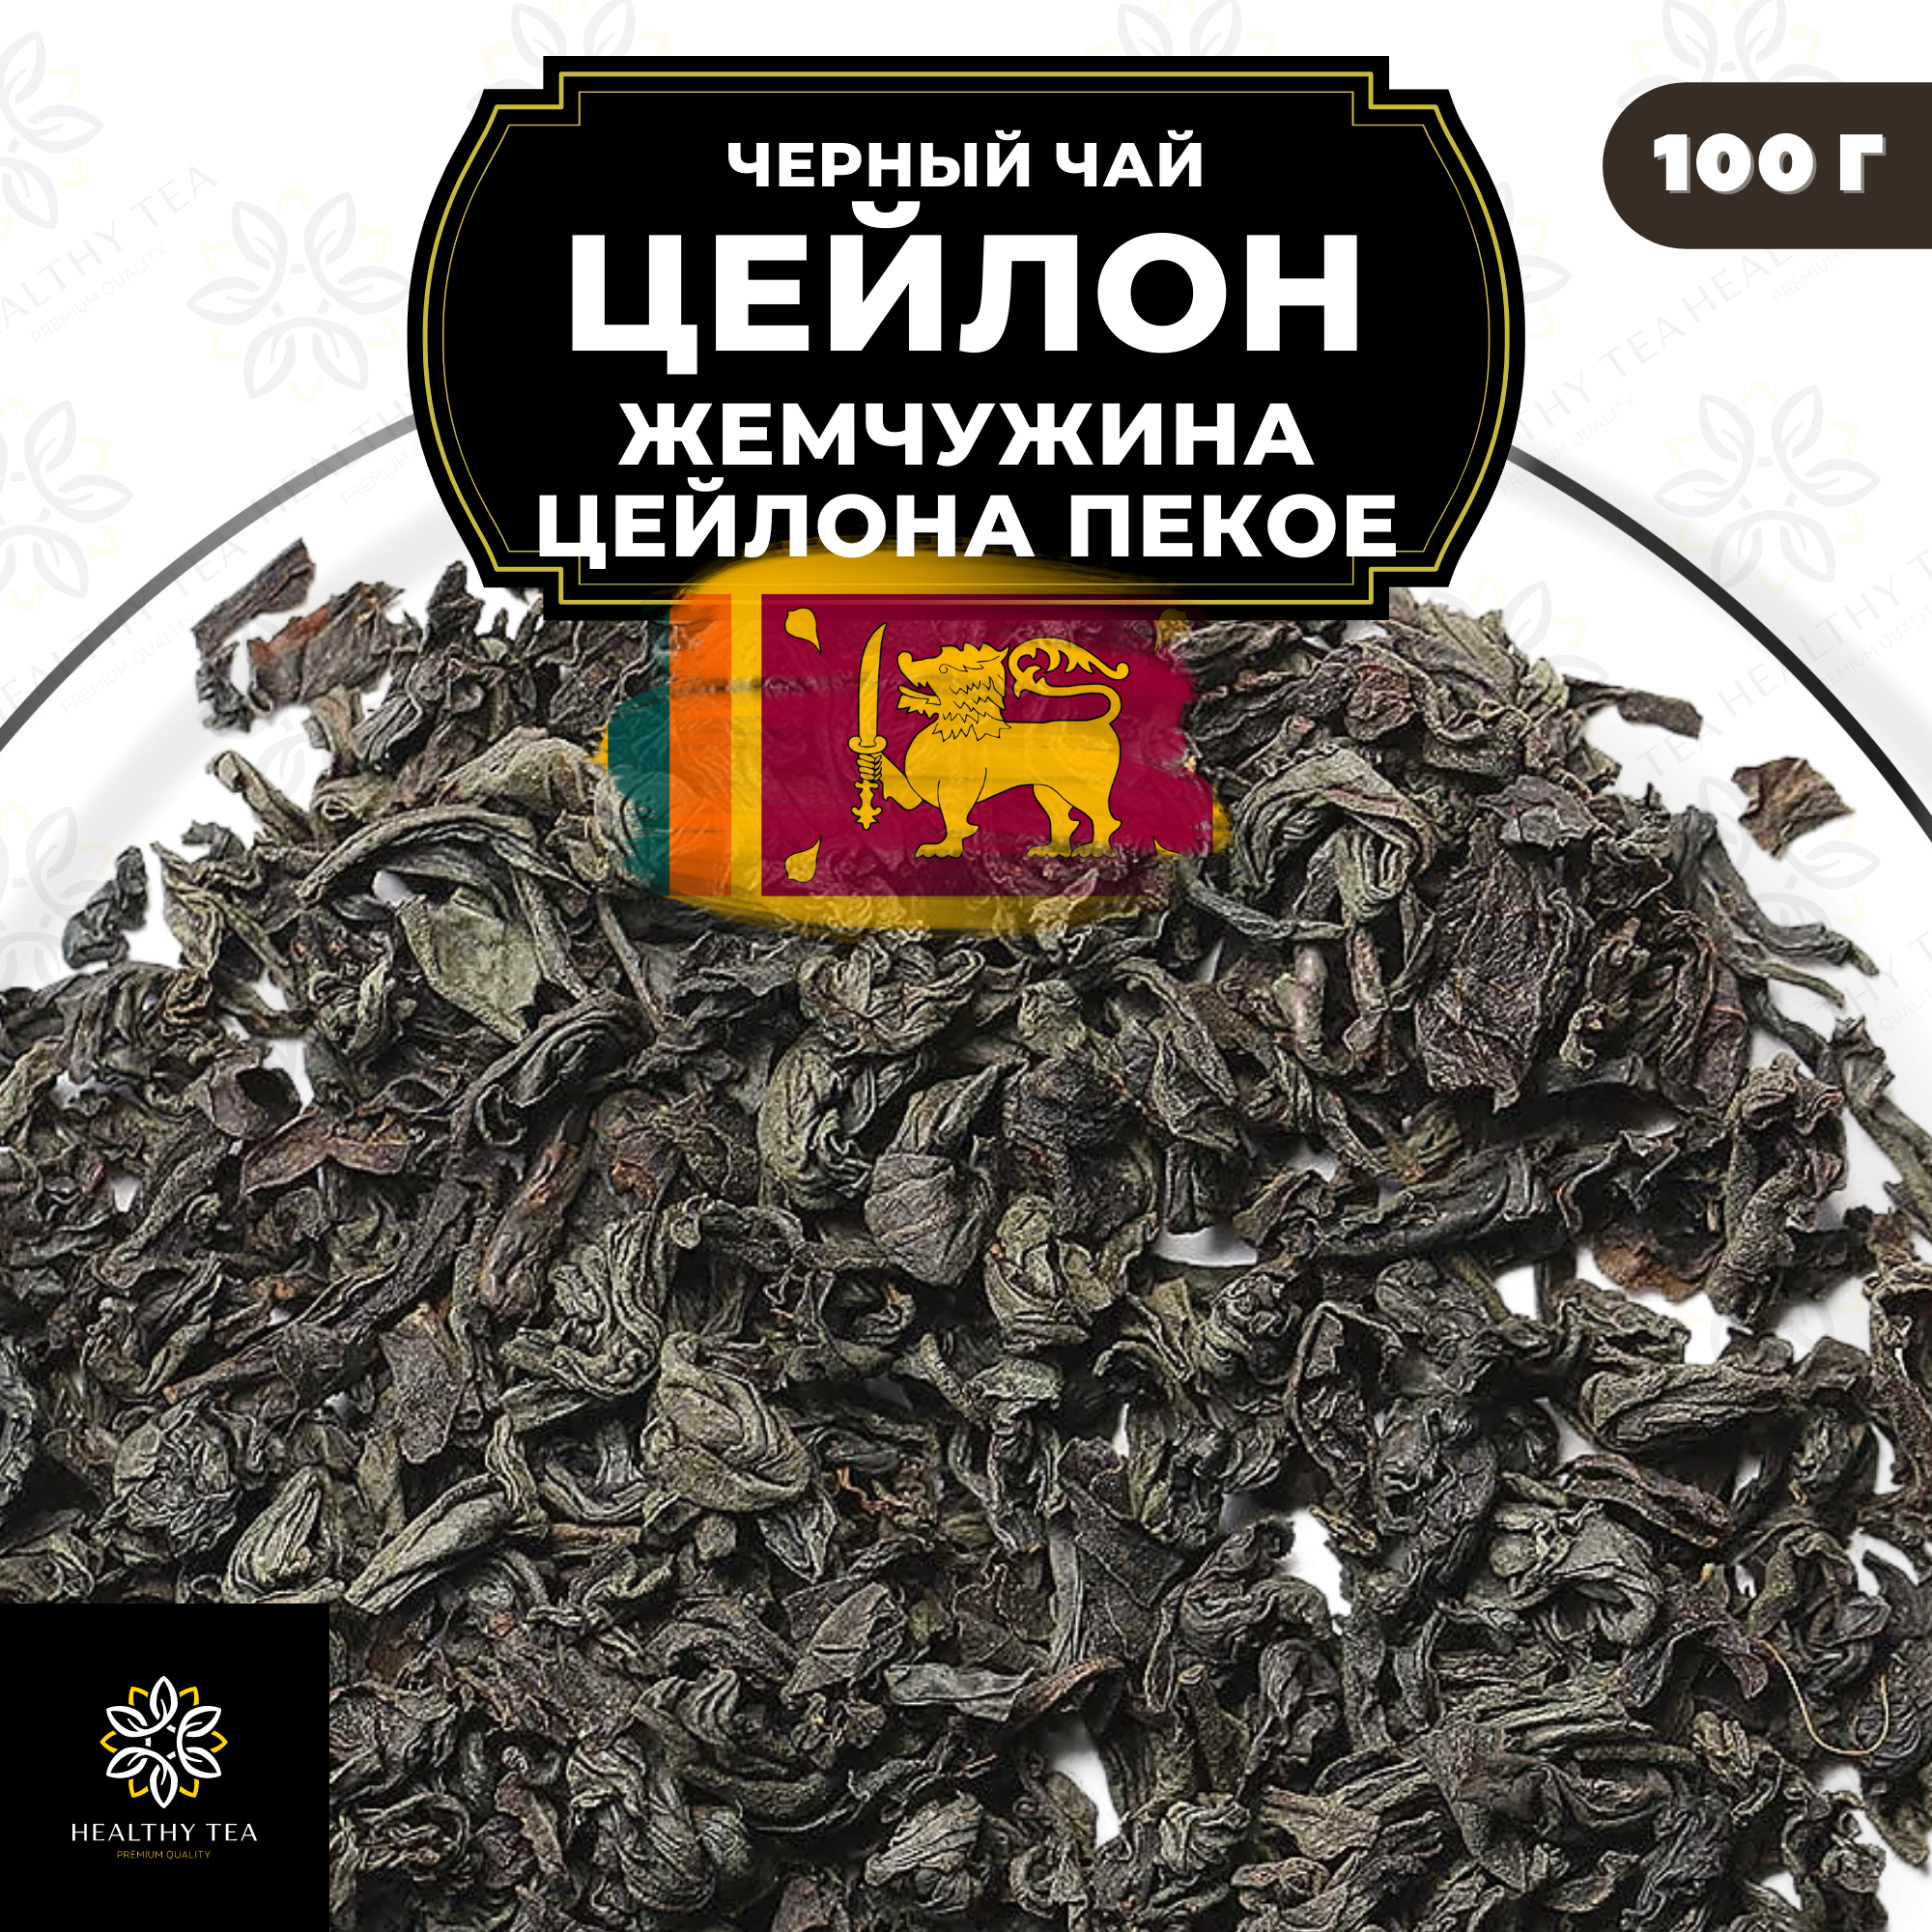 Черный крупнолистовой чай Цейлон Жемчужина Цейлона (PEKOE) Полезный чай / HEALTHY TEA, 100 гр